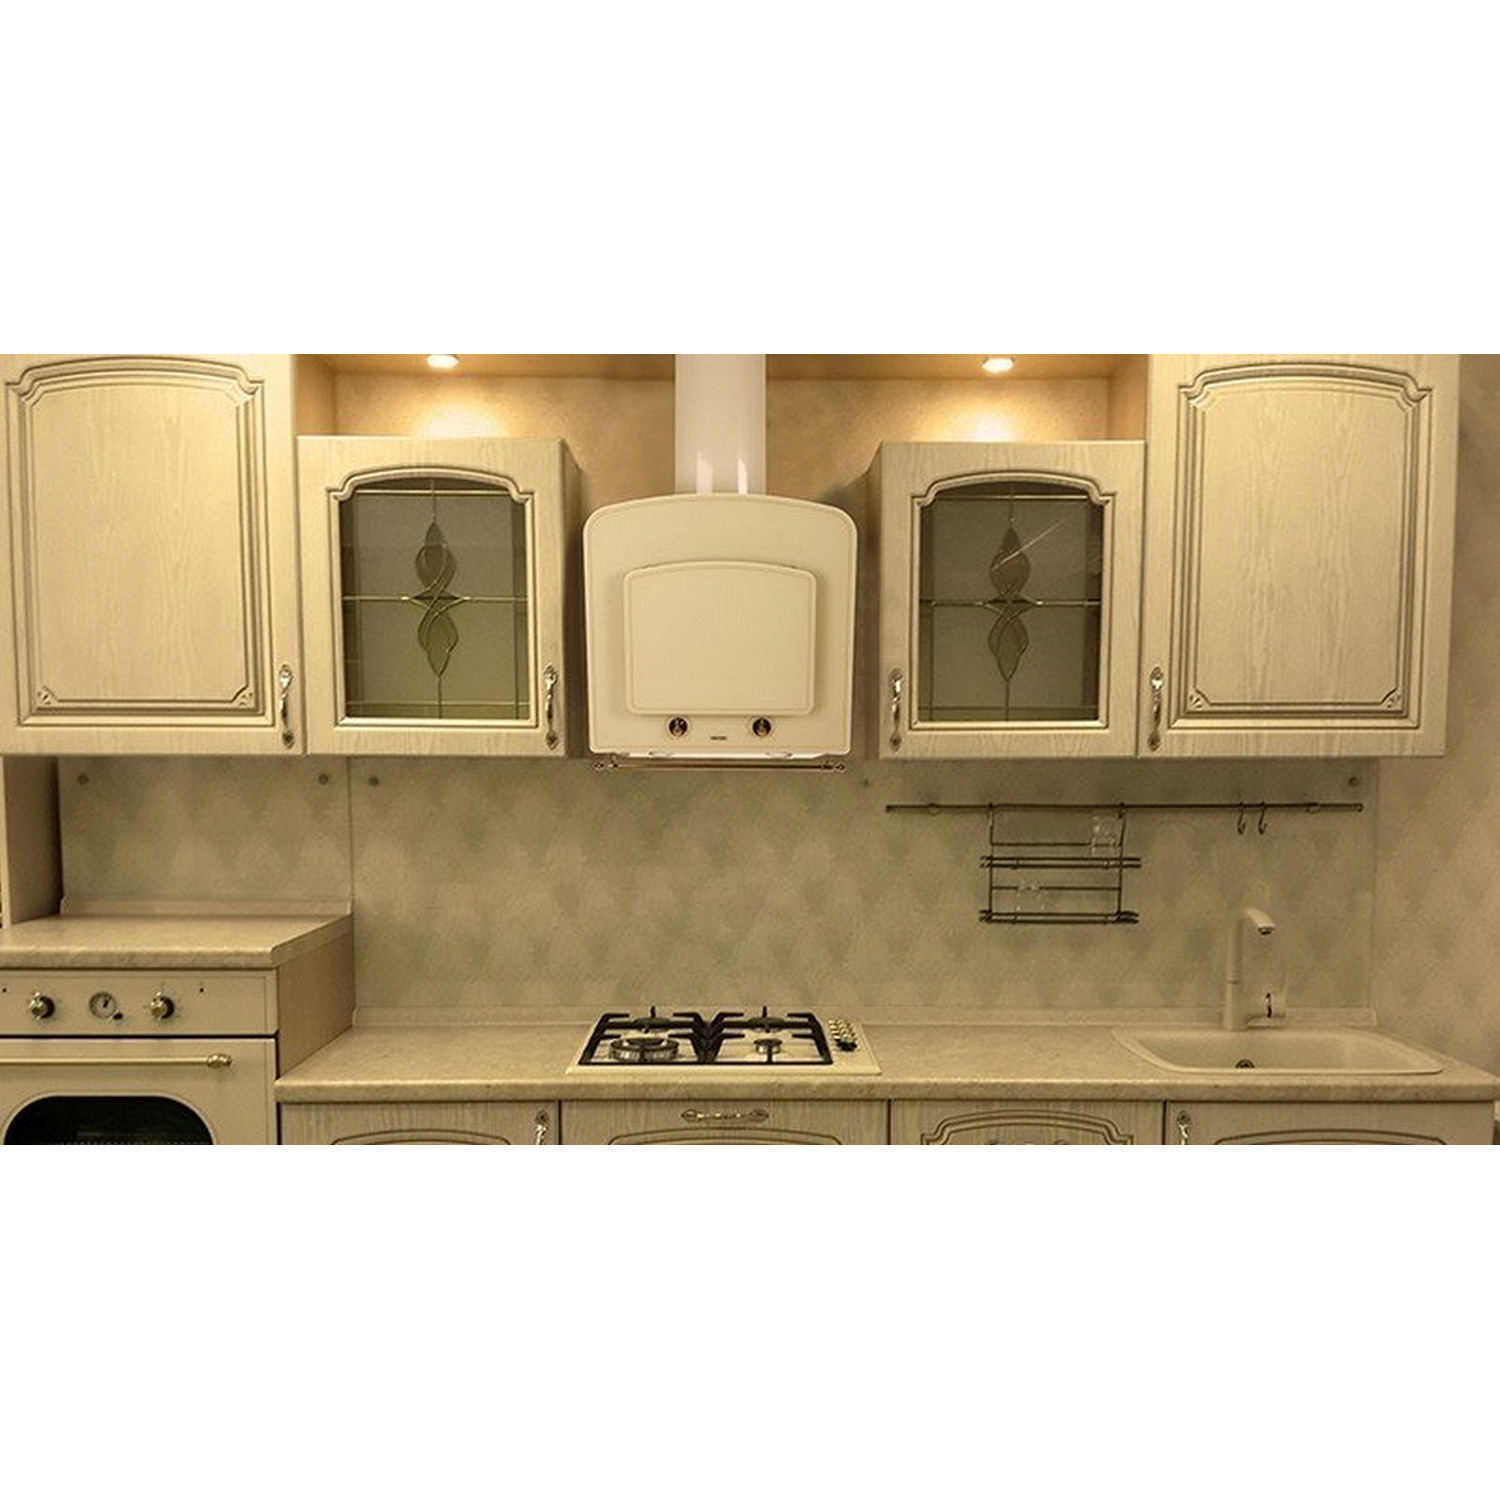 Кухонная вытяжка Eleyus Classic 1000 60 BL+RB обзор - фото 8